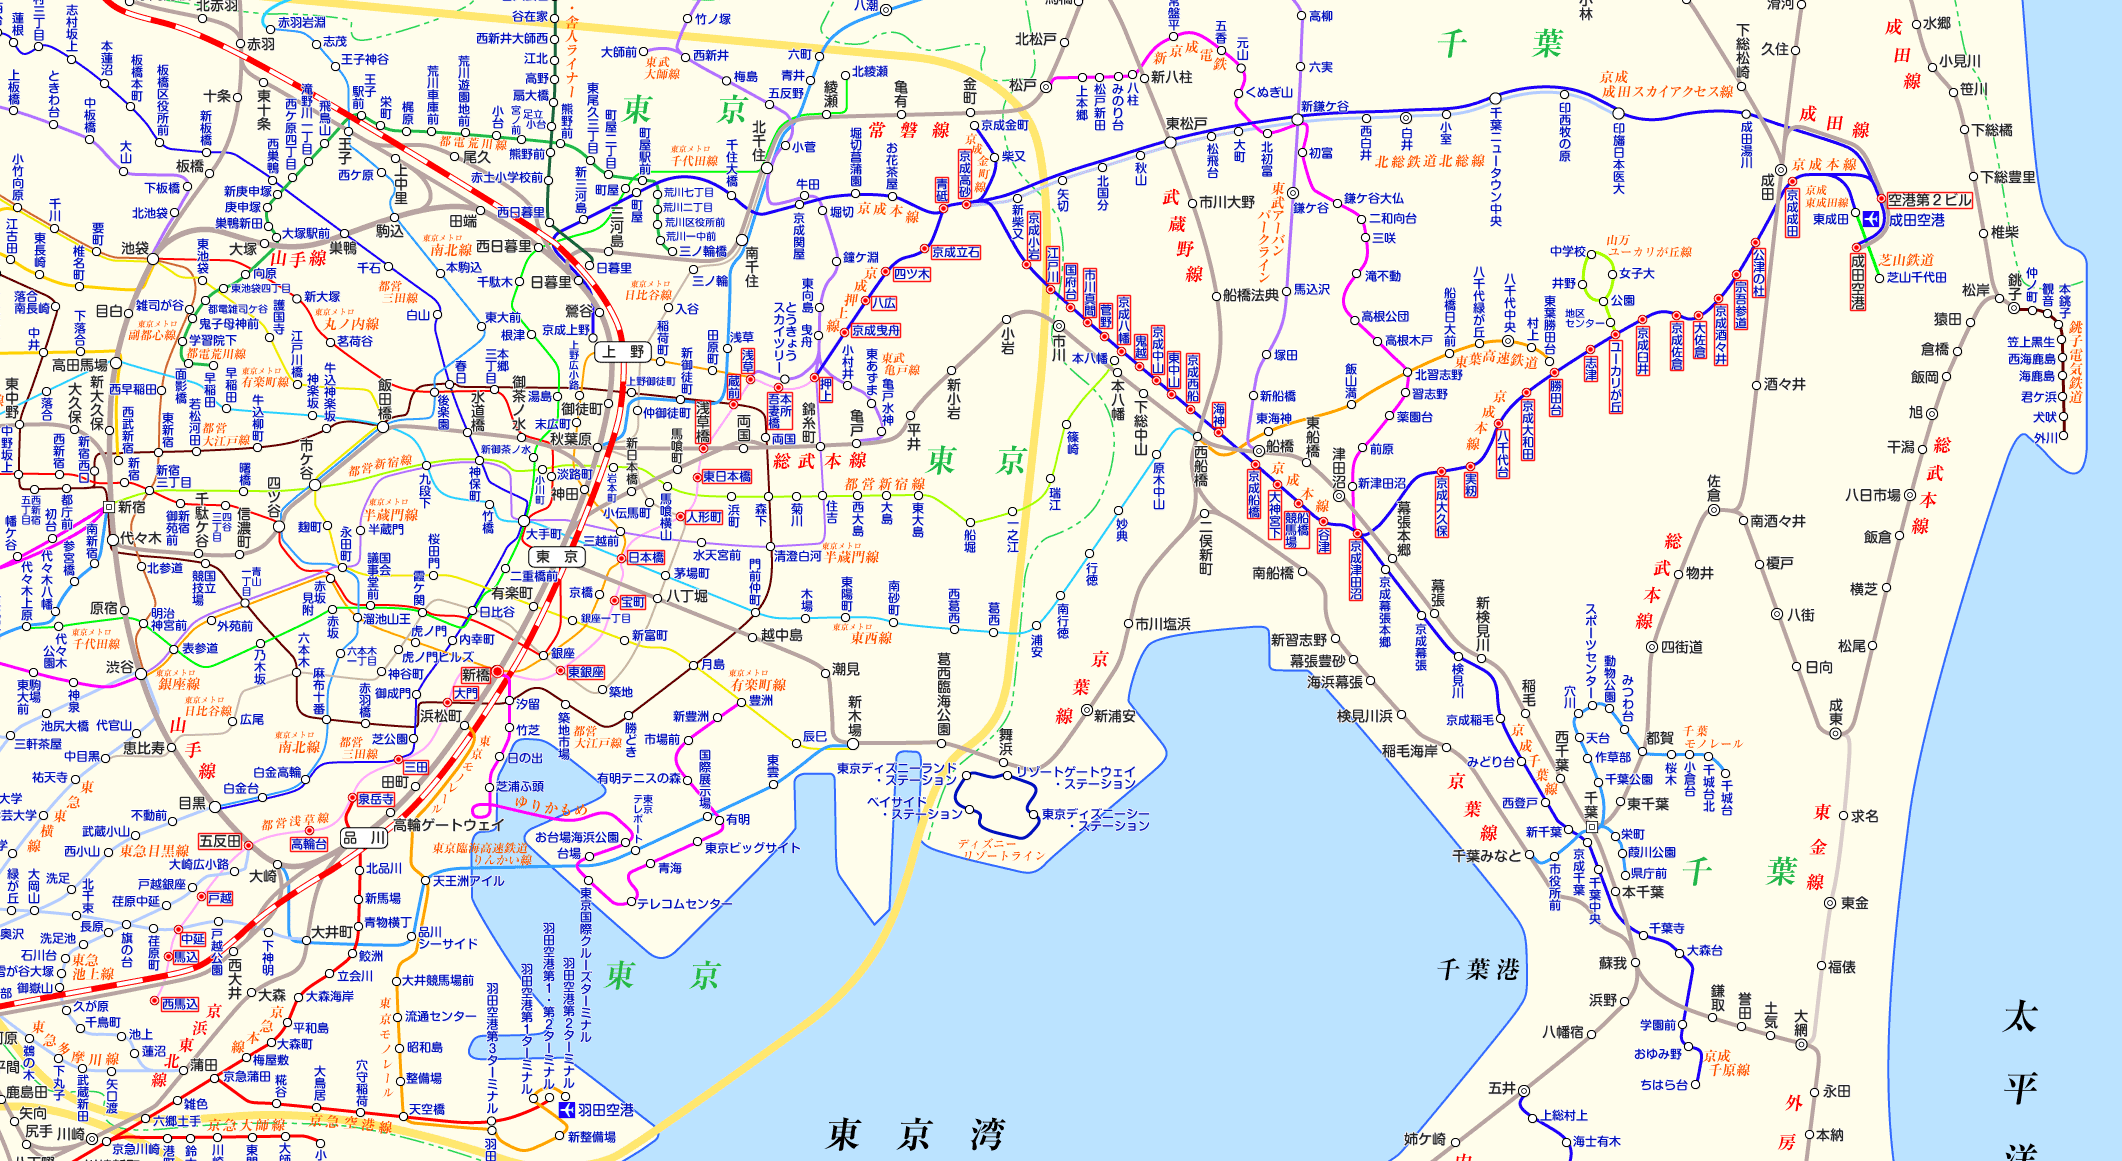 都営浅草線 成田空港行き（京成本線経由）の路線図